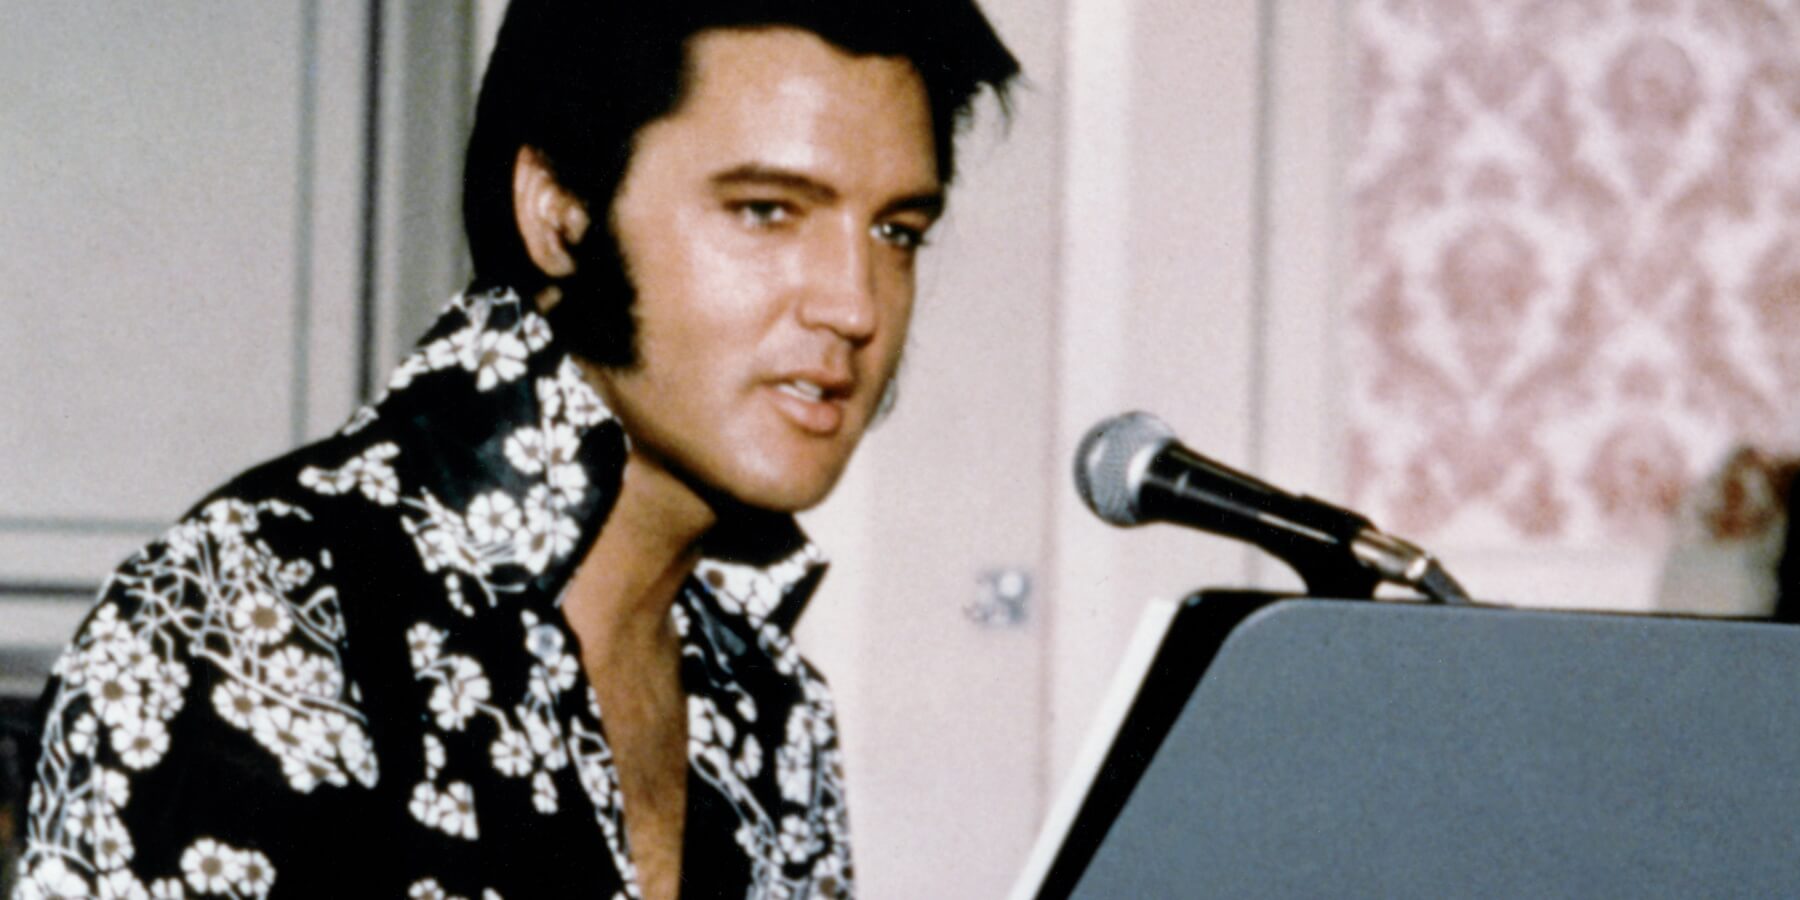 Elvis Presley singing in 1970